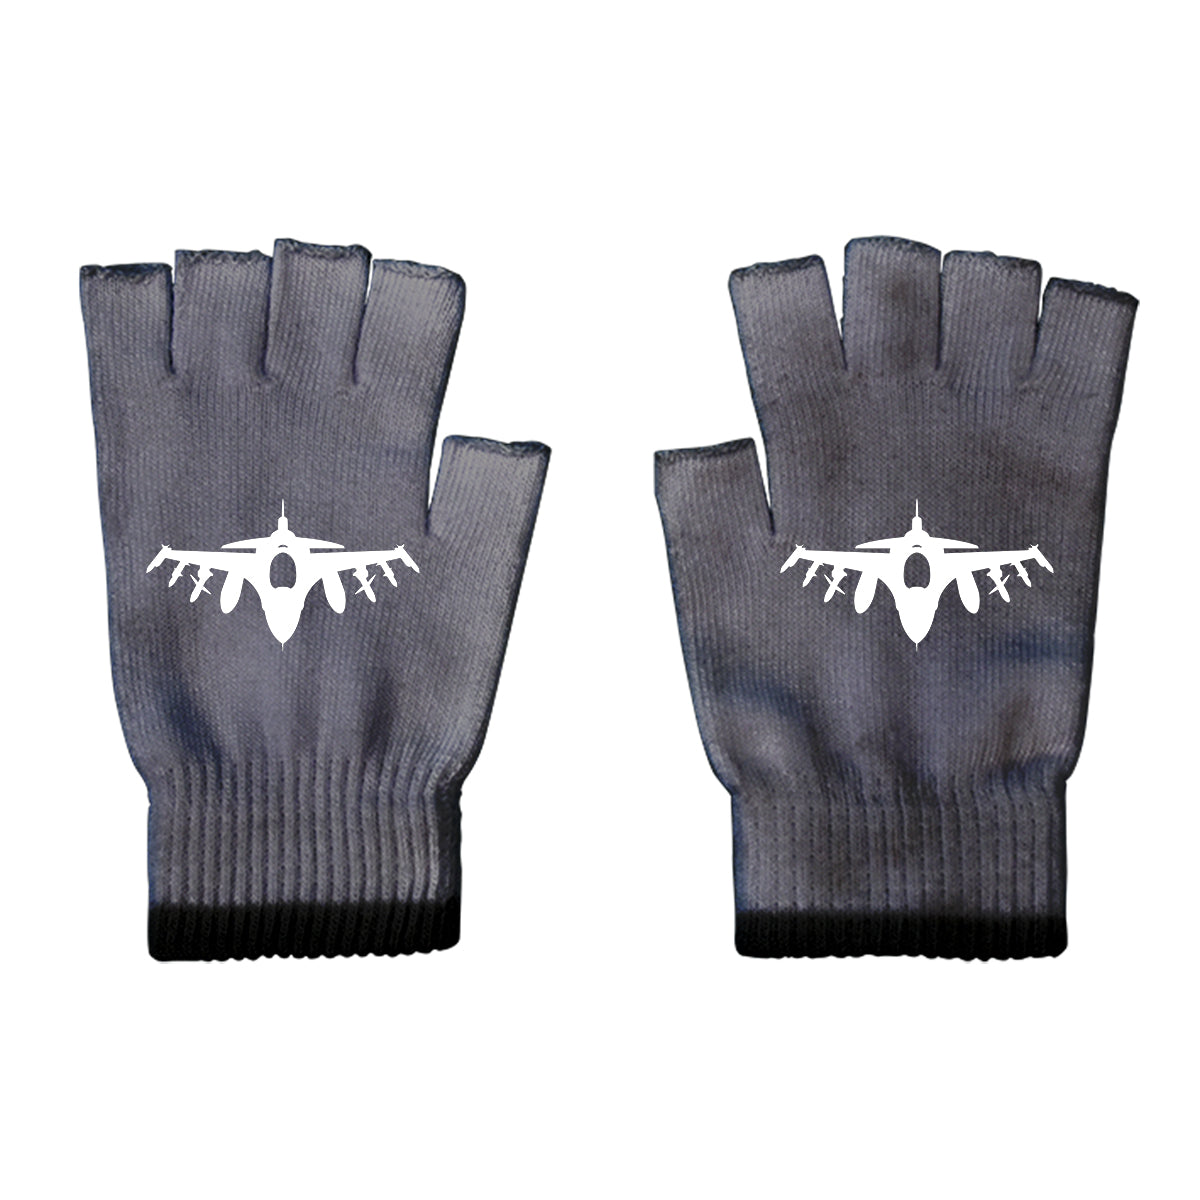 Fighting Falcon F16 Silhouette Designed Cut Gloves